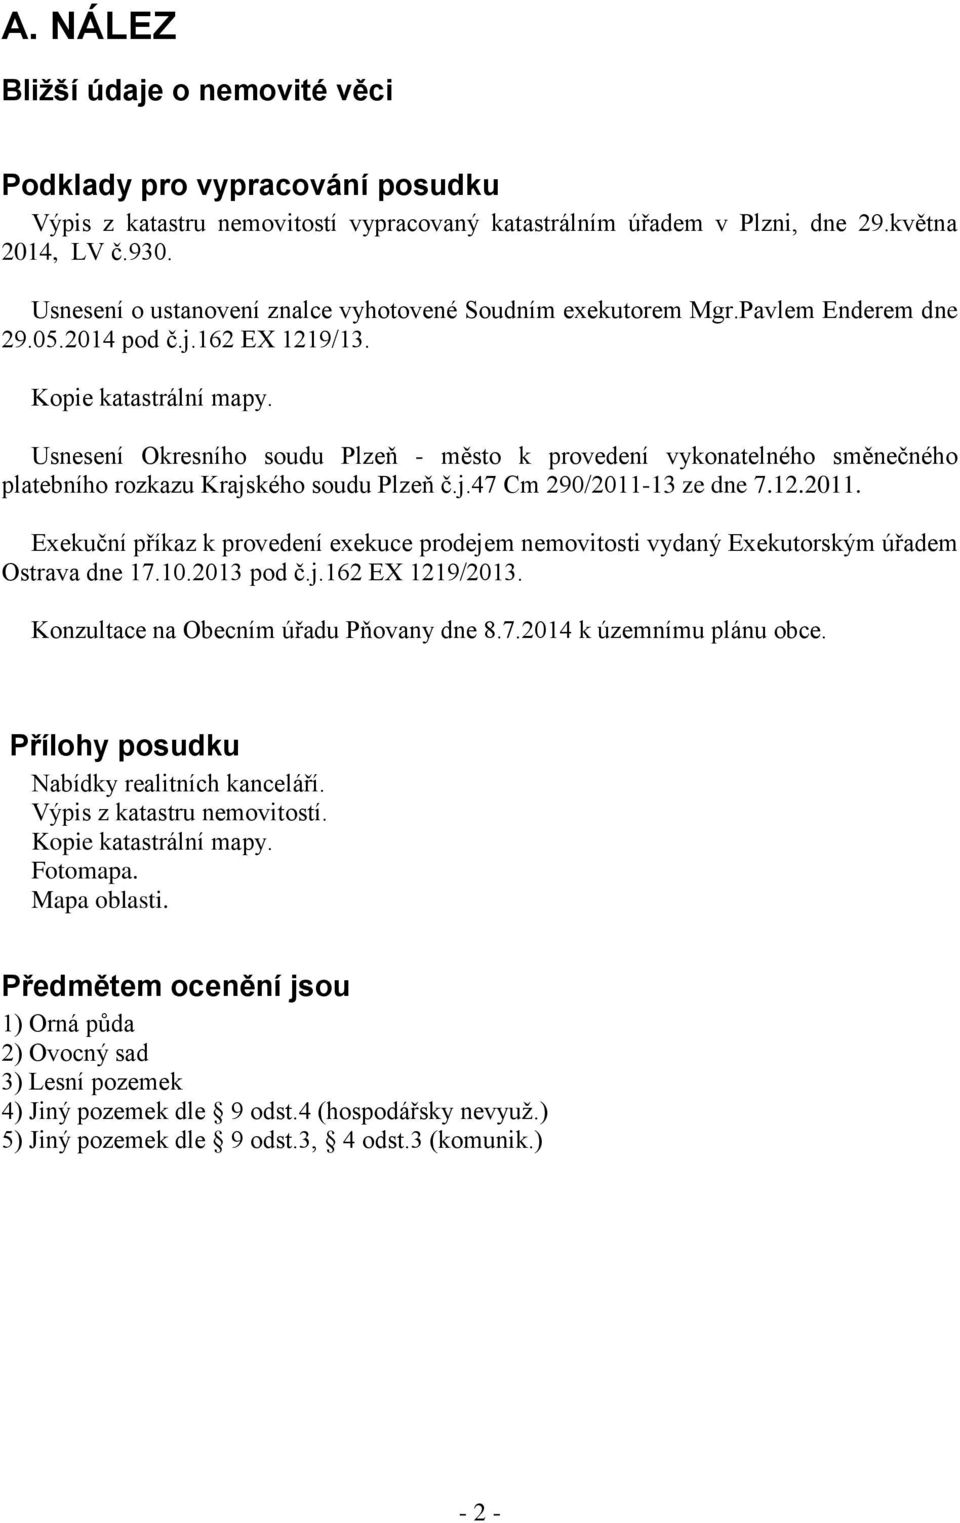 Usnesení Okresního soudu Plzeň - město k provedení vykonatelného směnečného platebního rozkazu Krajského soudu Plzeň č.j.47 Cm 290/2011-